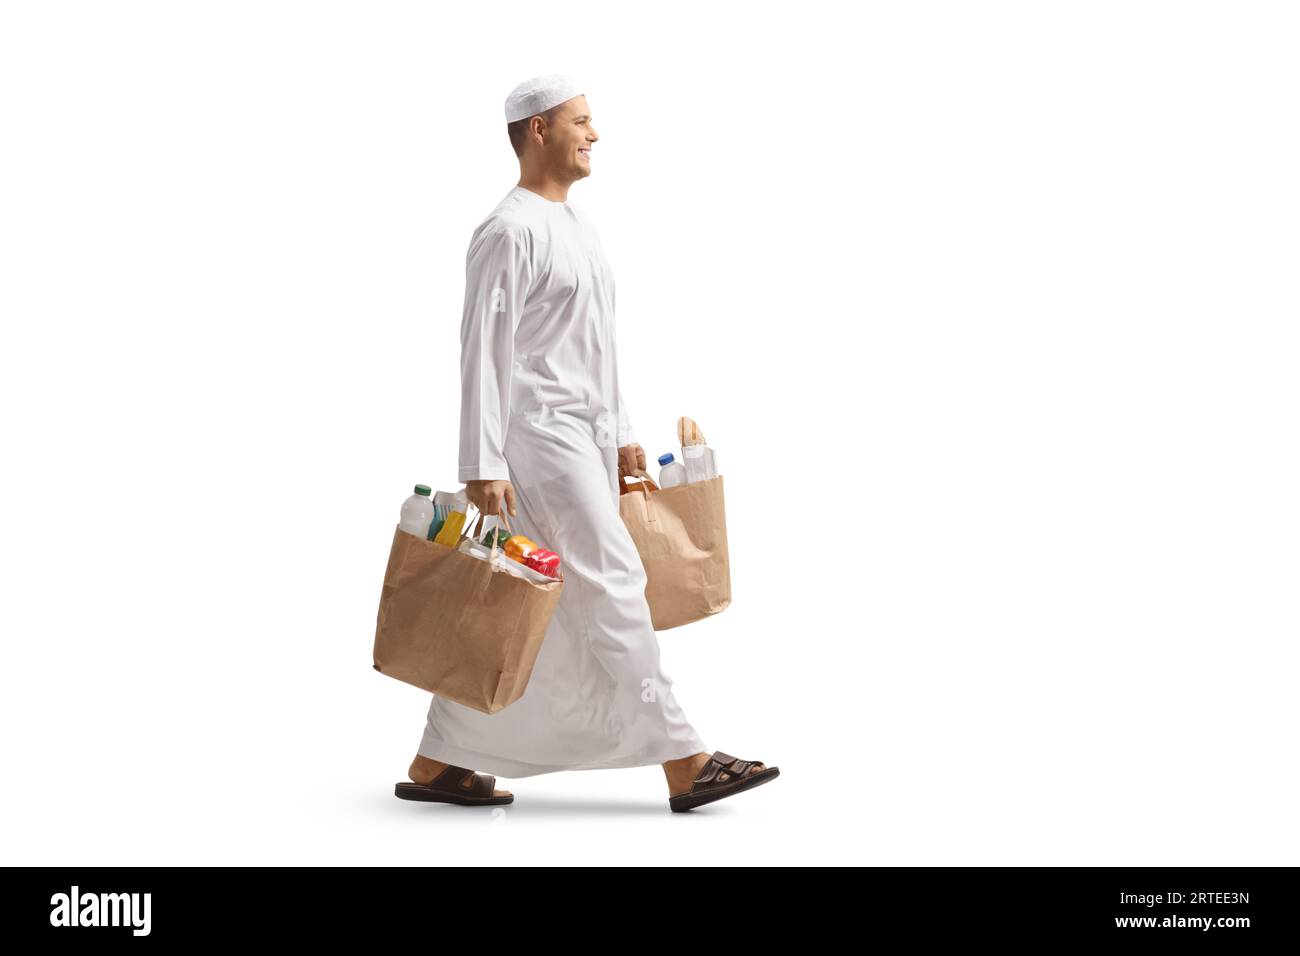 Foto a lunghezza intera di un uomo in abiti etnici che cammina e trasporta borse della spesa isolate su sfondo bianco Foto Stock